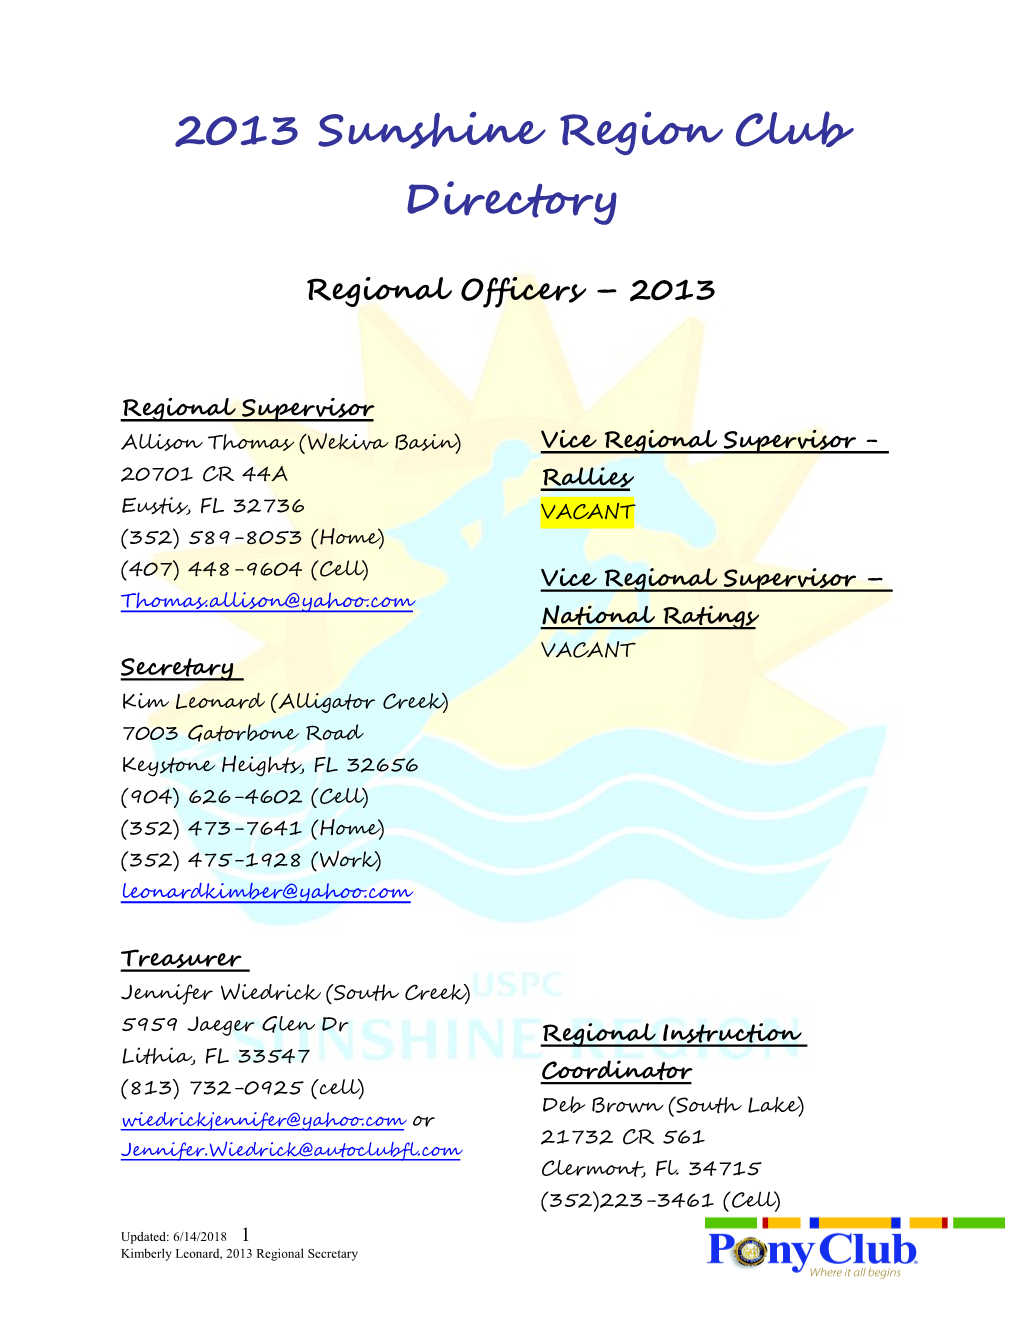 2007 Sunshine Region Club Directory